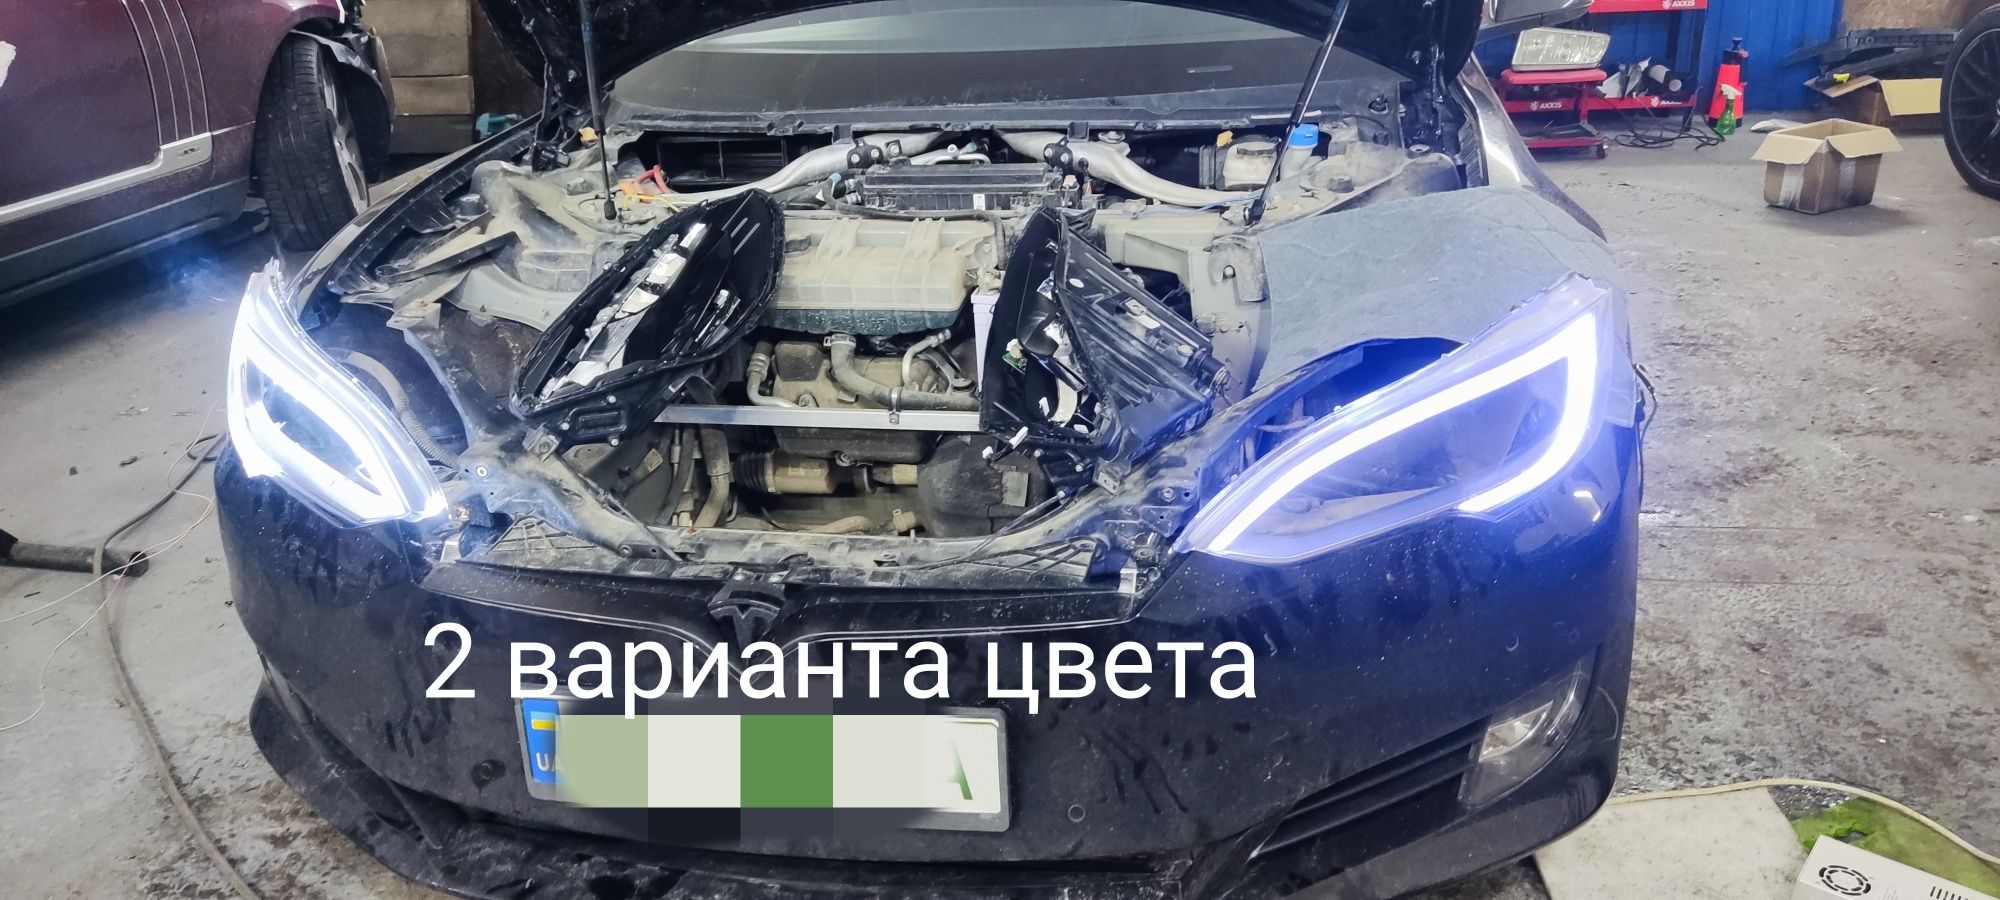 Ремонт фар Tesla S,ДХО ,поворотники